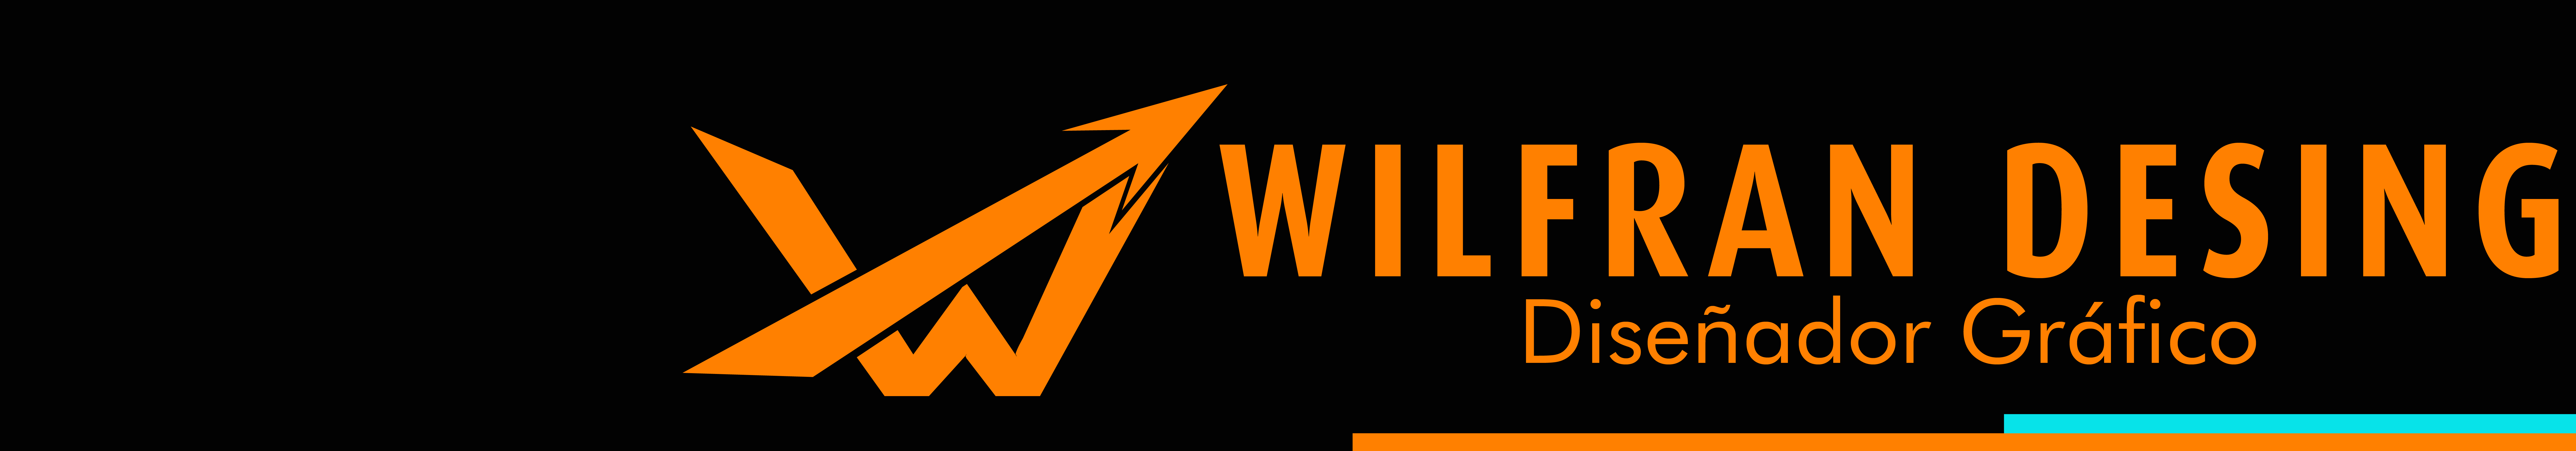 @WILFRAN Desing's profile banner